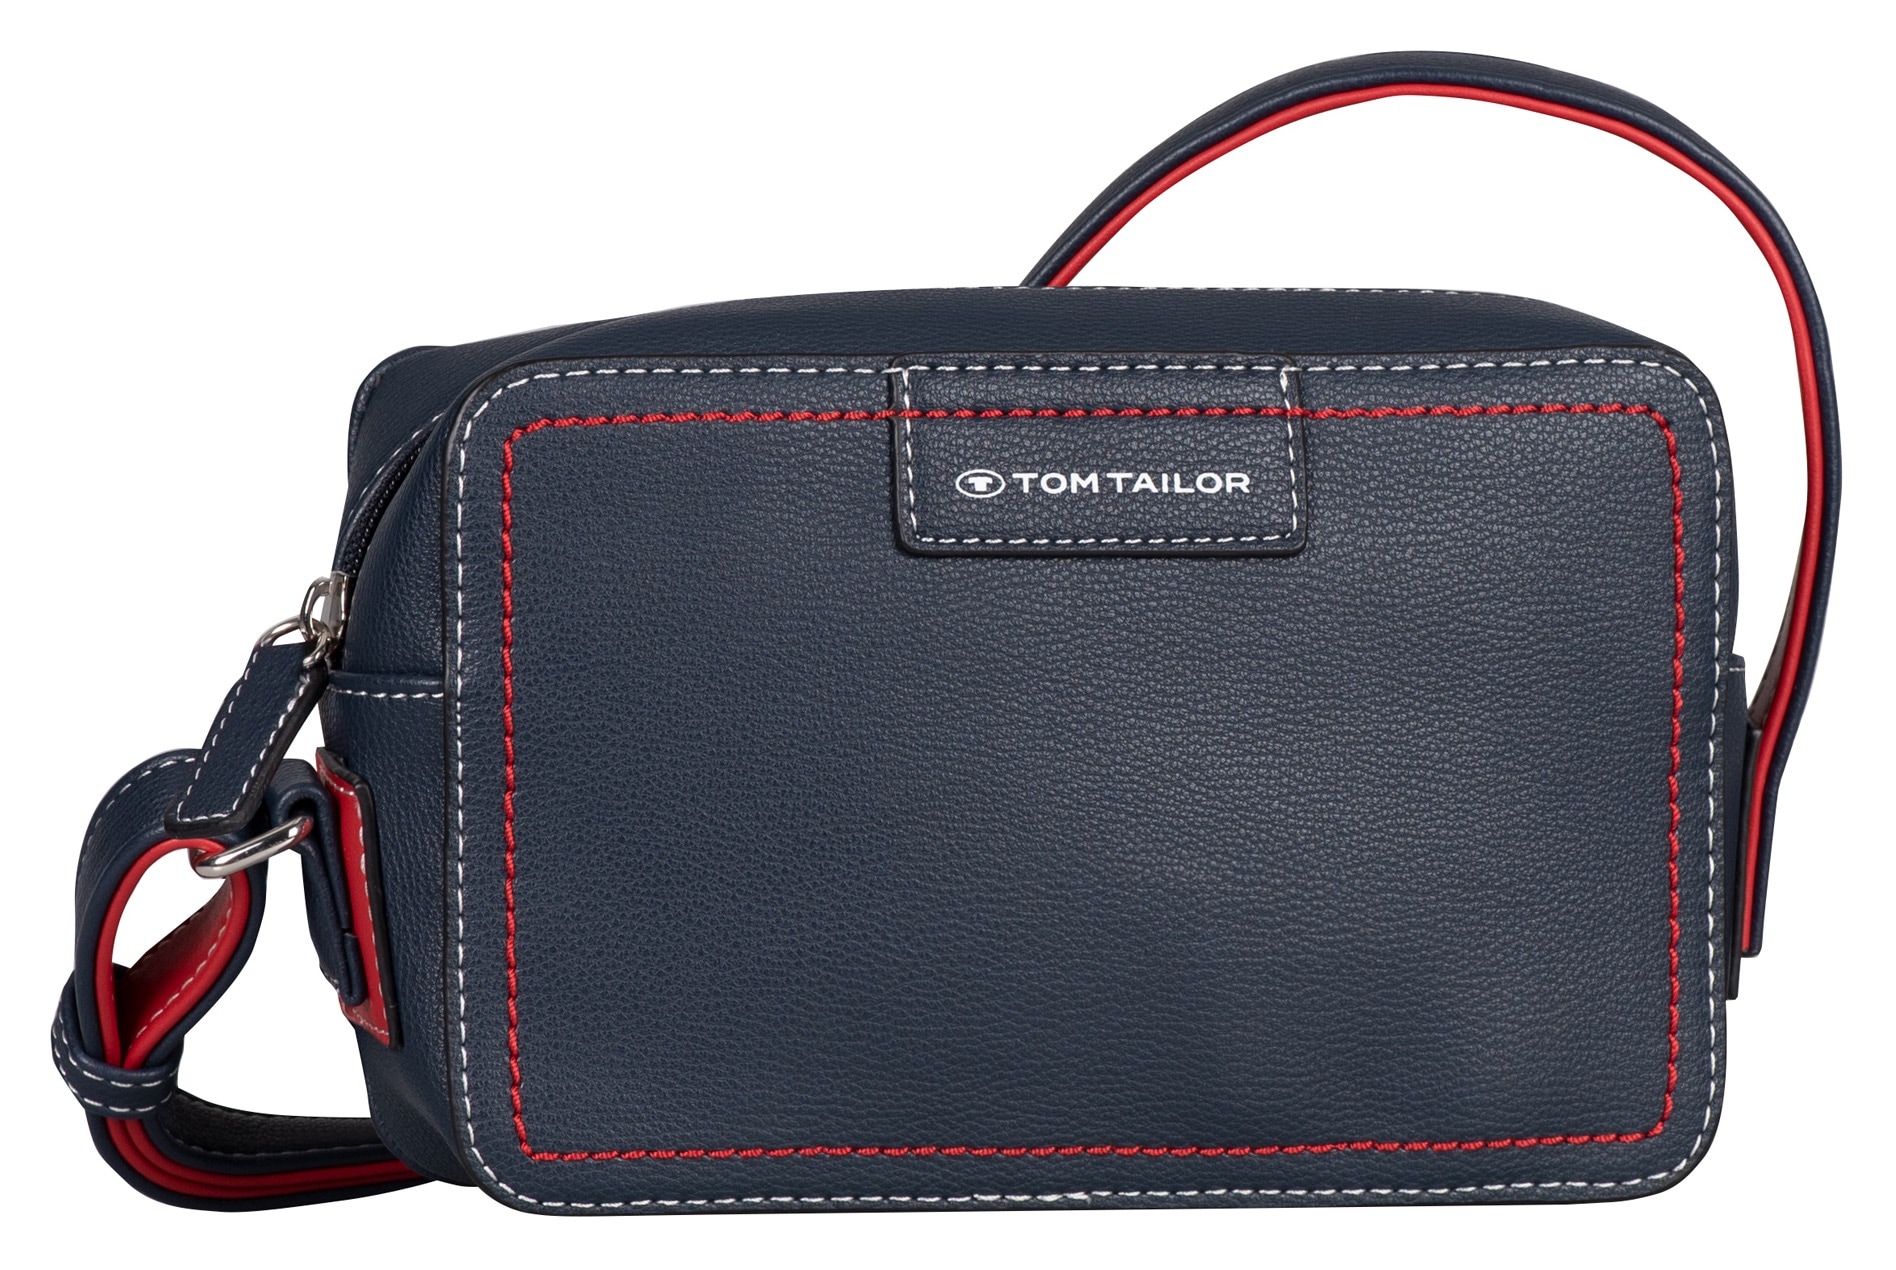 TOM TAILOR Handtasche "Miri mare", maritimer Stil mit Kontrastnähten und durchdachten Farbakzenten